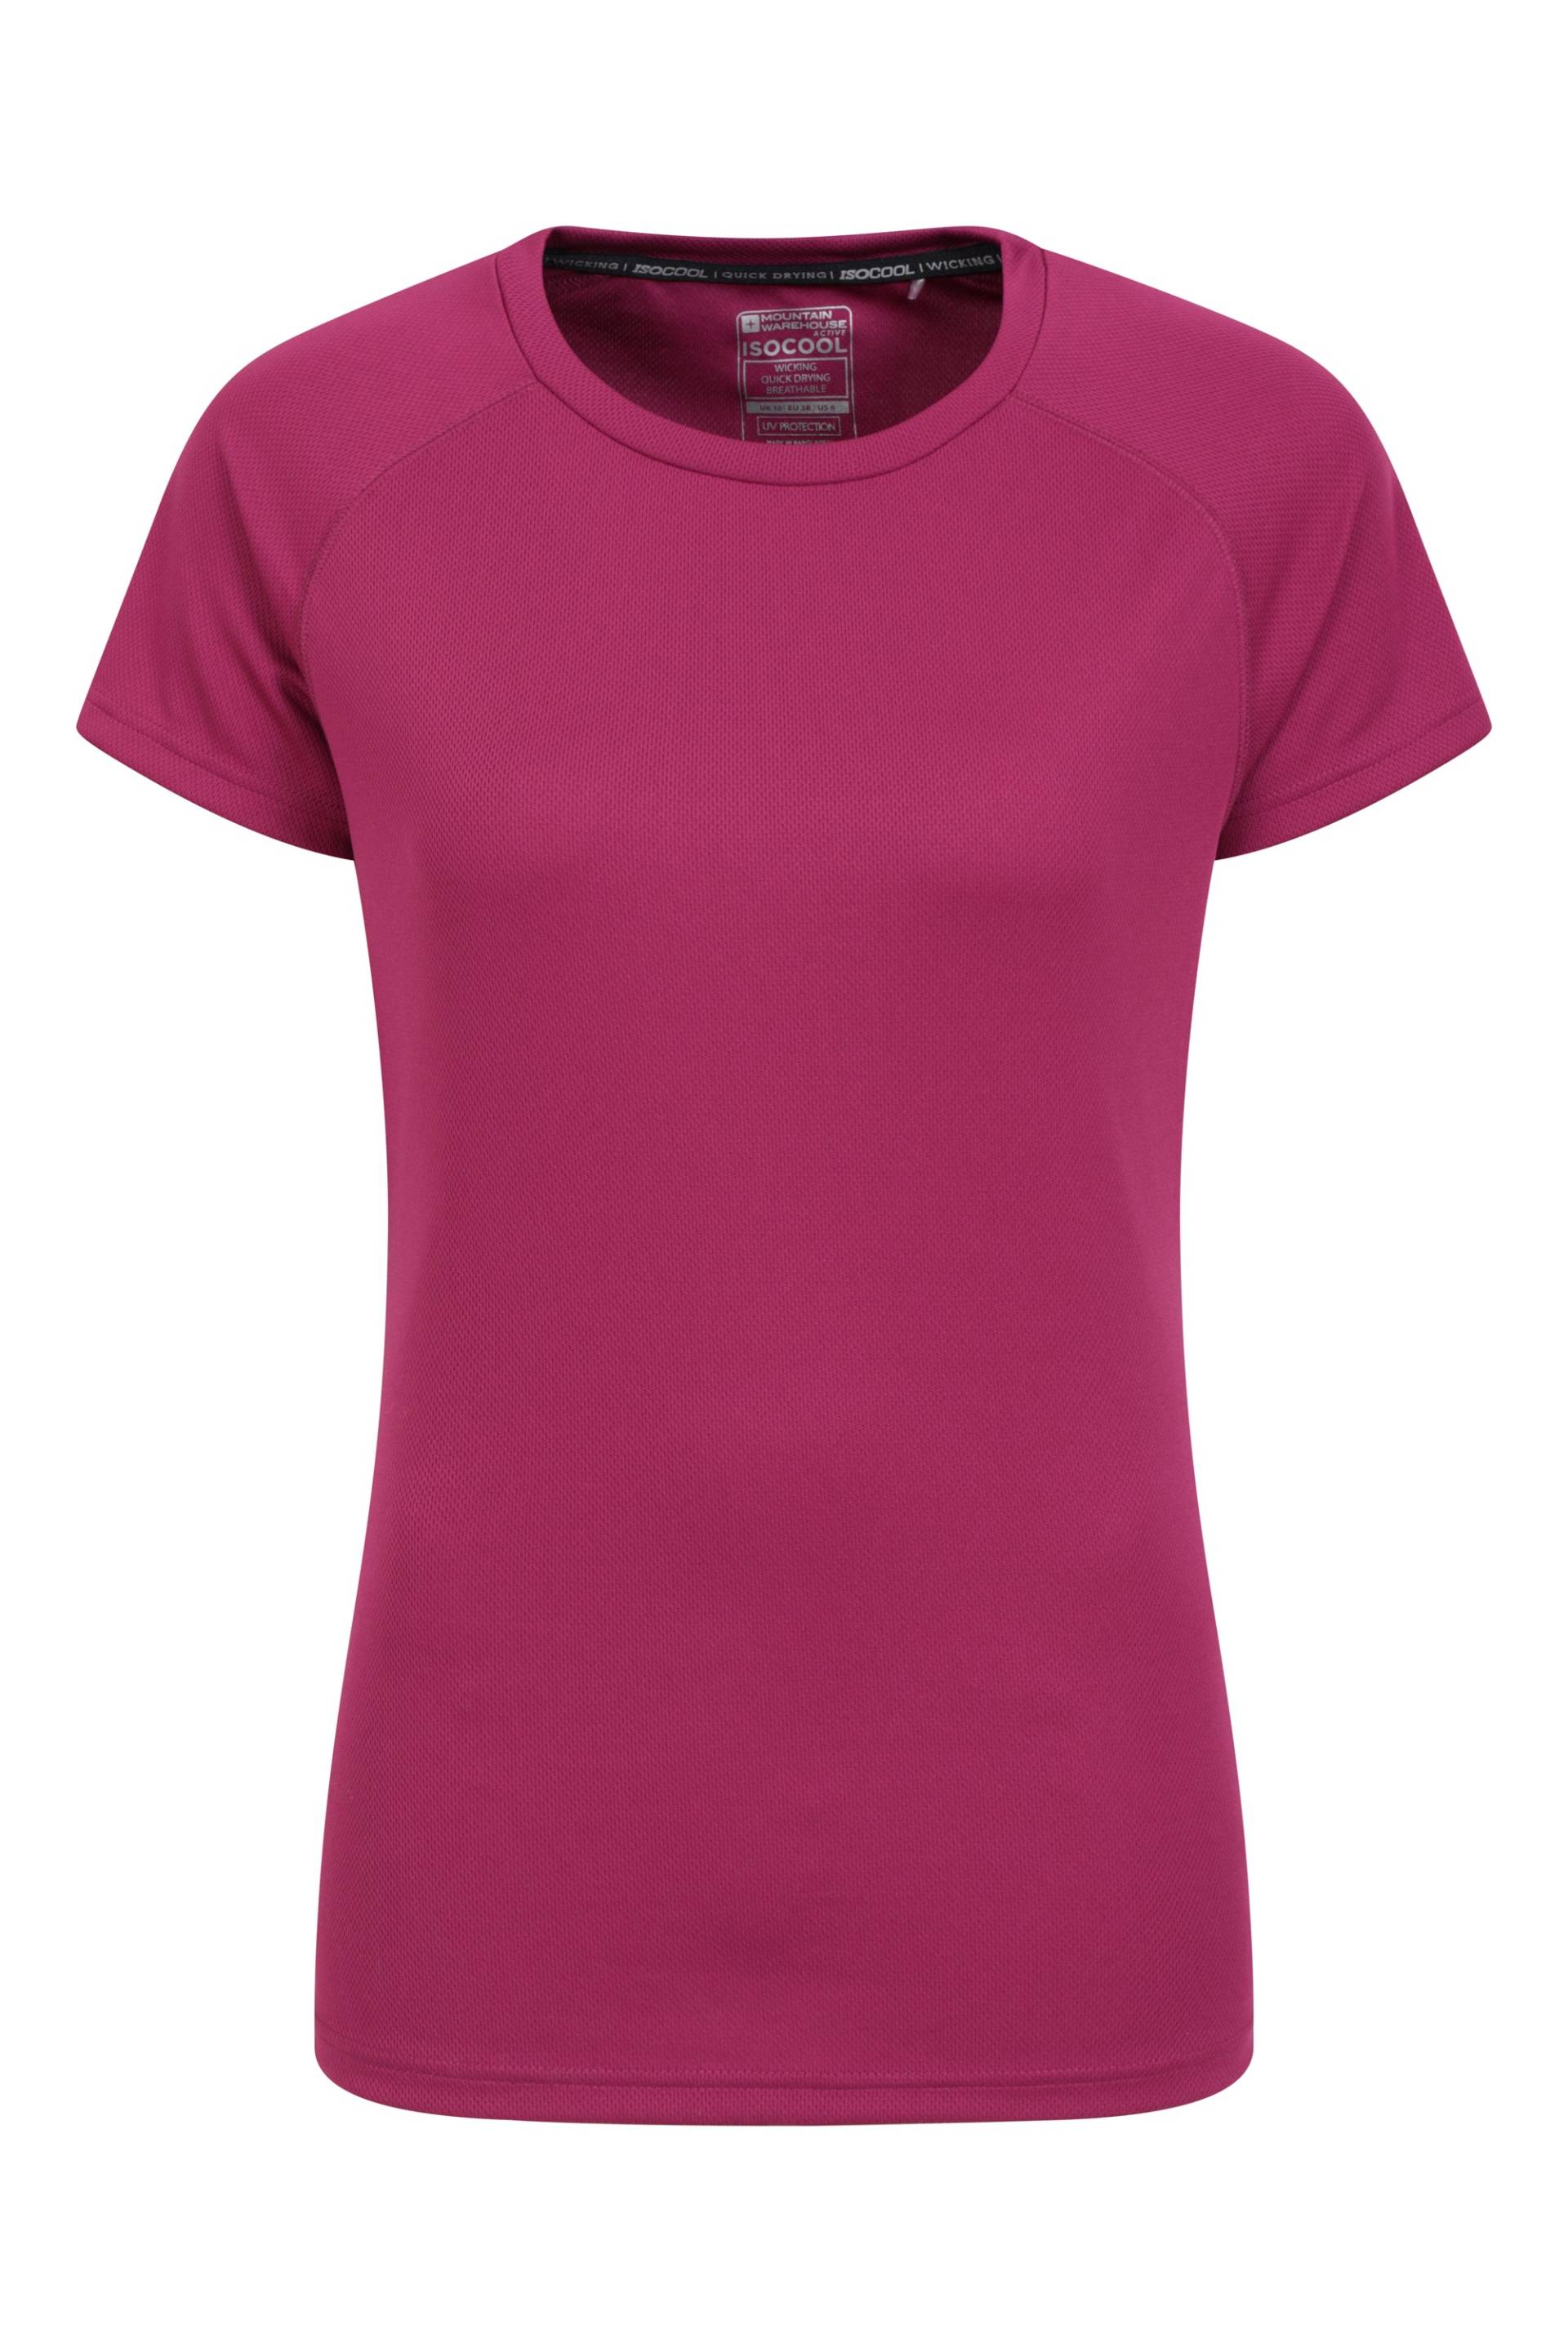 Endurance Damen T-Shirt - Violett von Mountain Warehouse